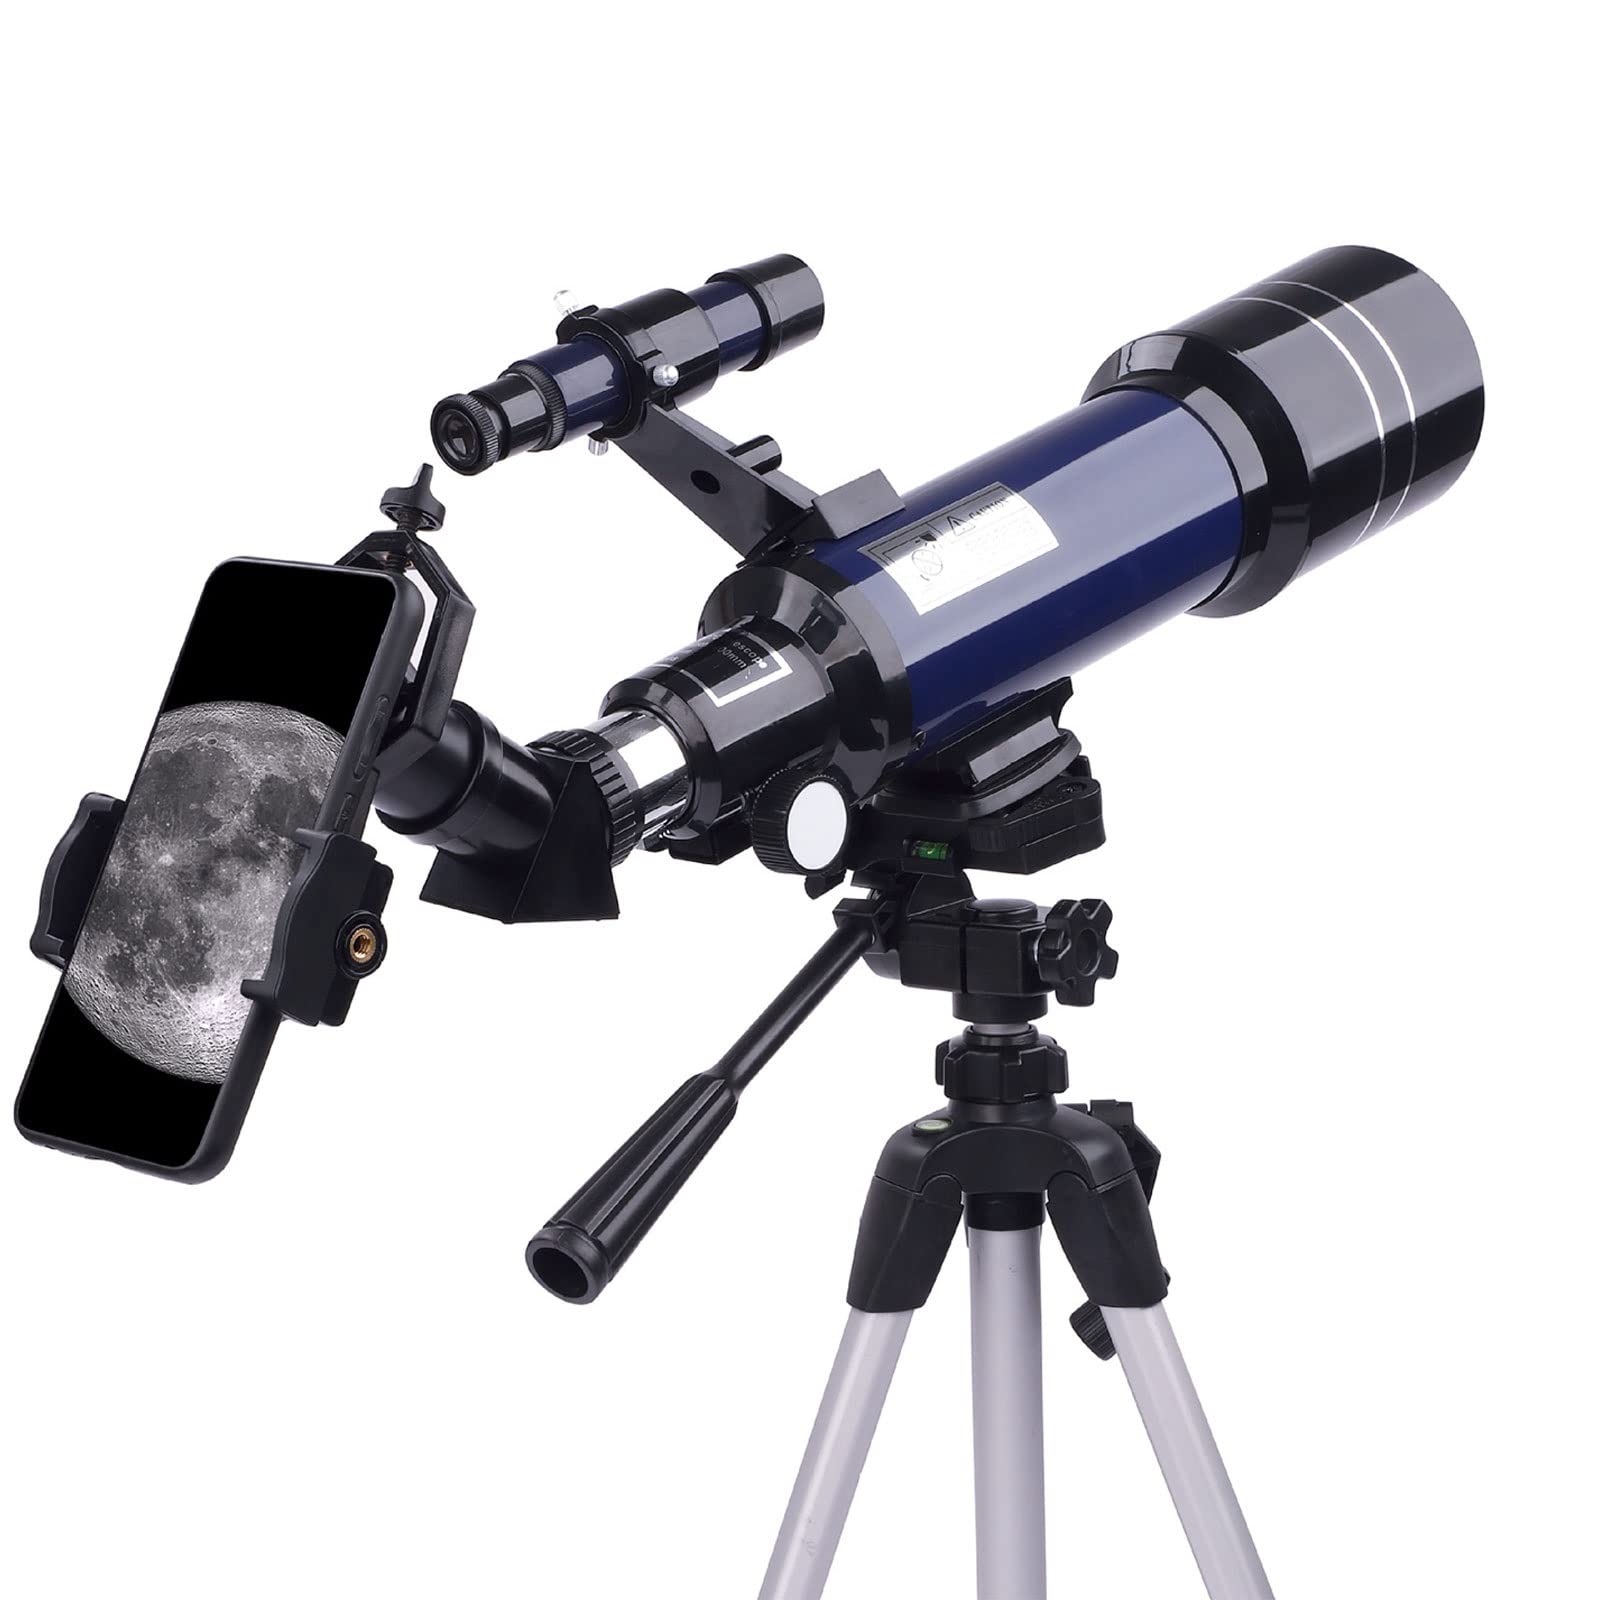 Spacmirrors 70-mm-Astronomisches Teleskop, Teleskope für die Astronomie, tragbares Teleskop für Kinder, Teleskop perfekt für Kinder, Kinder, Teenager